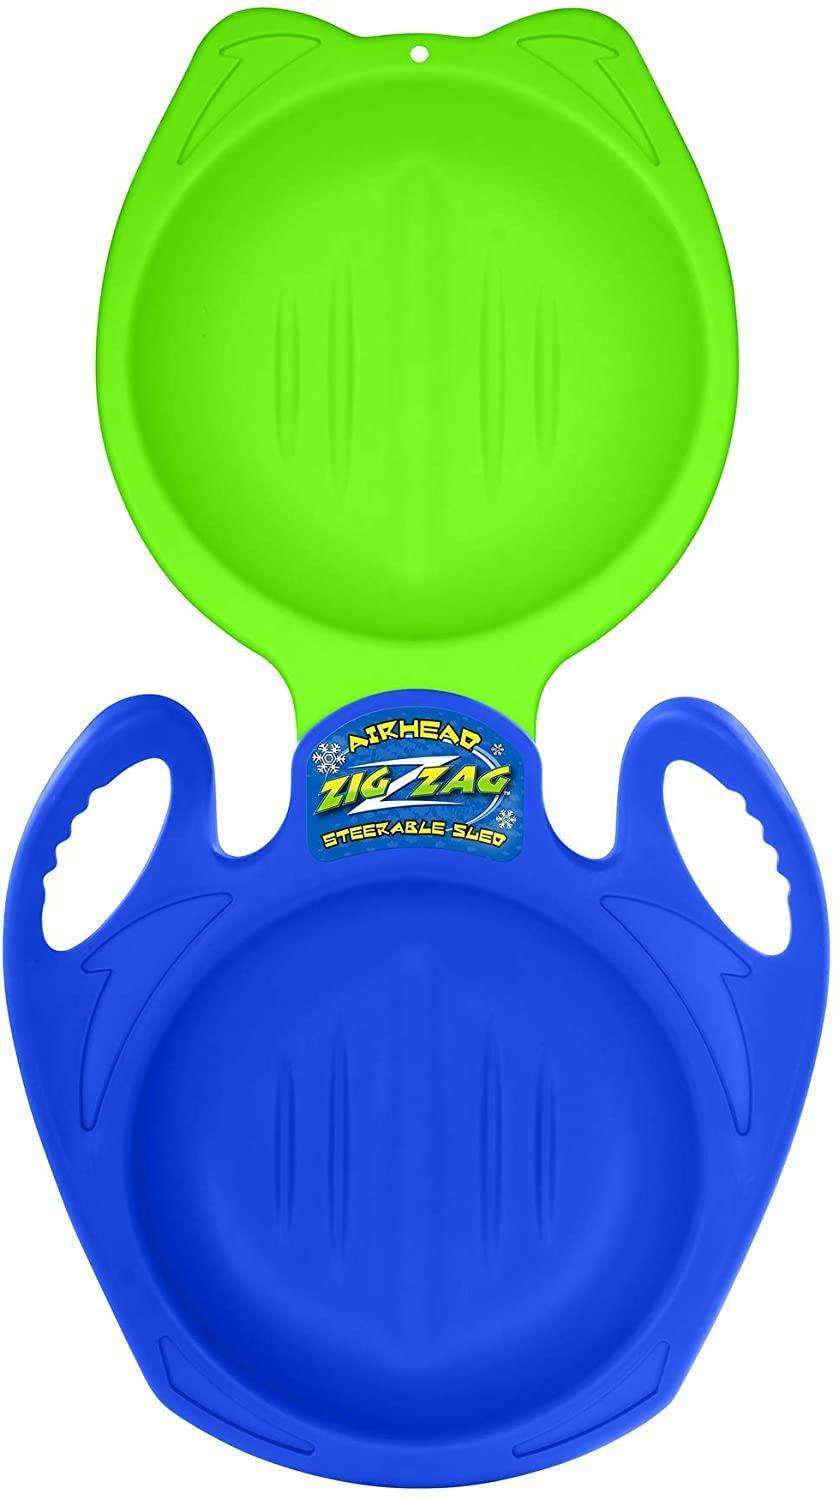 ZIG-ZAG Steerable Sled, 5 Packs